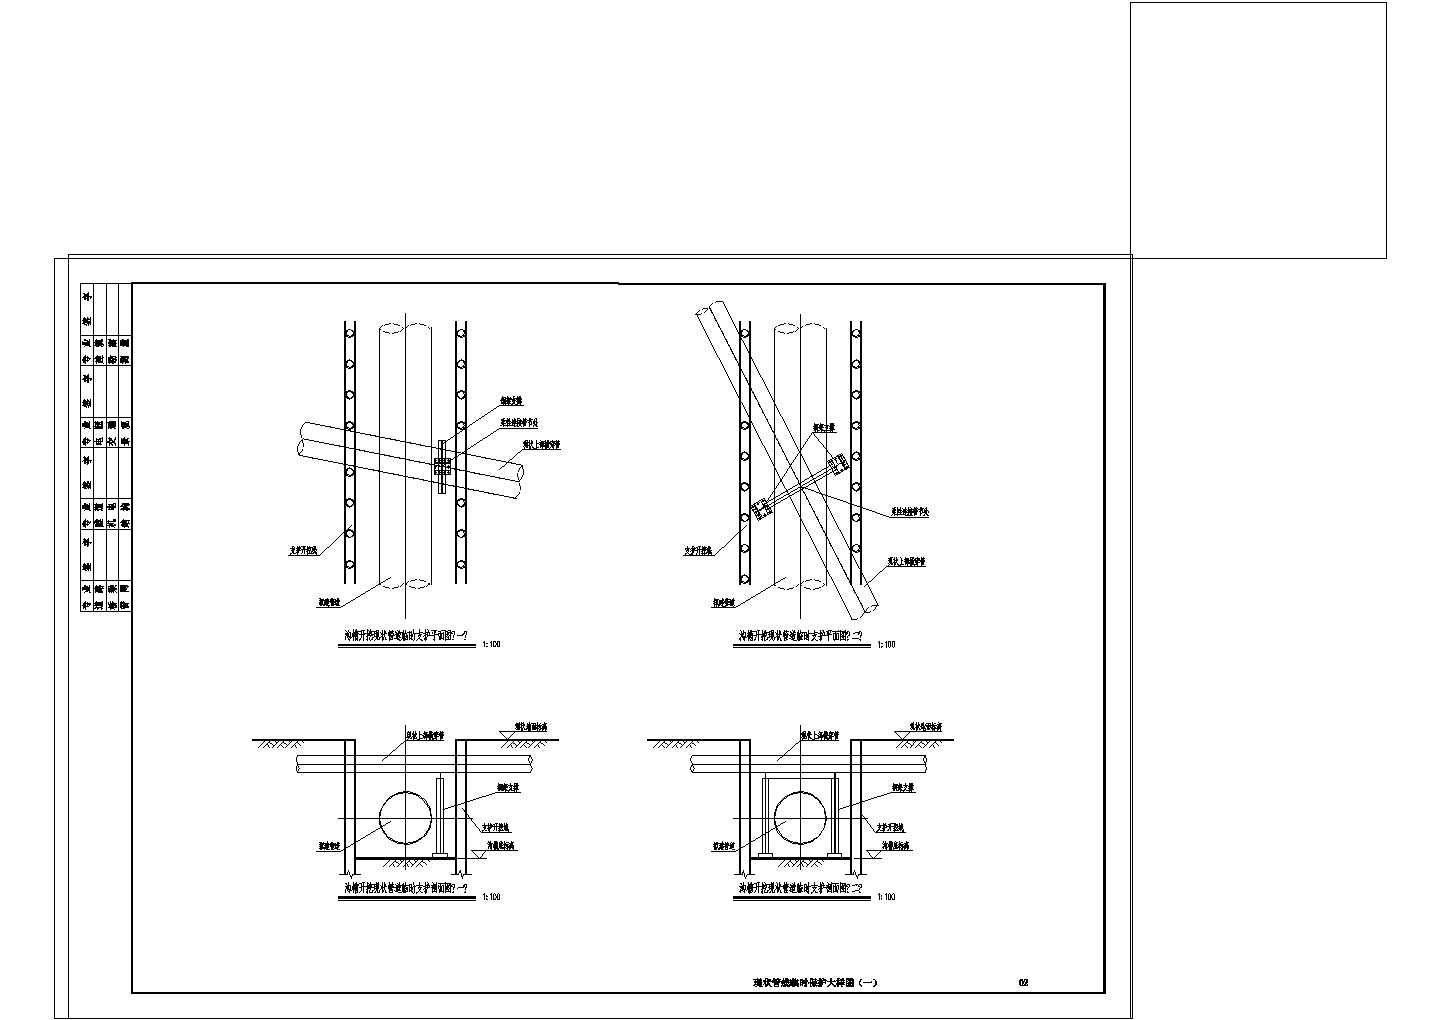 唐家桥区块排水管网改造工程初步设计结构图纸